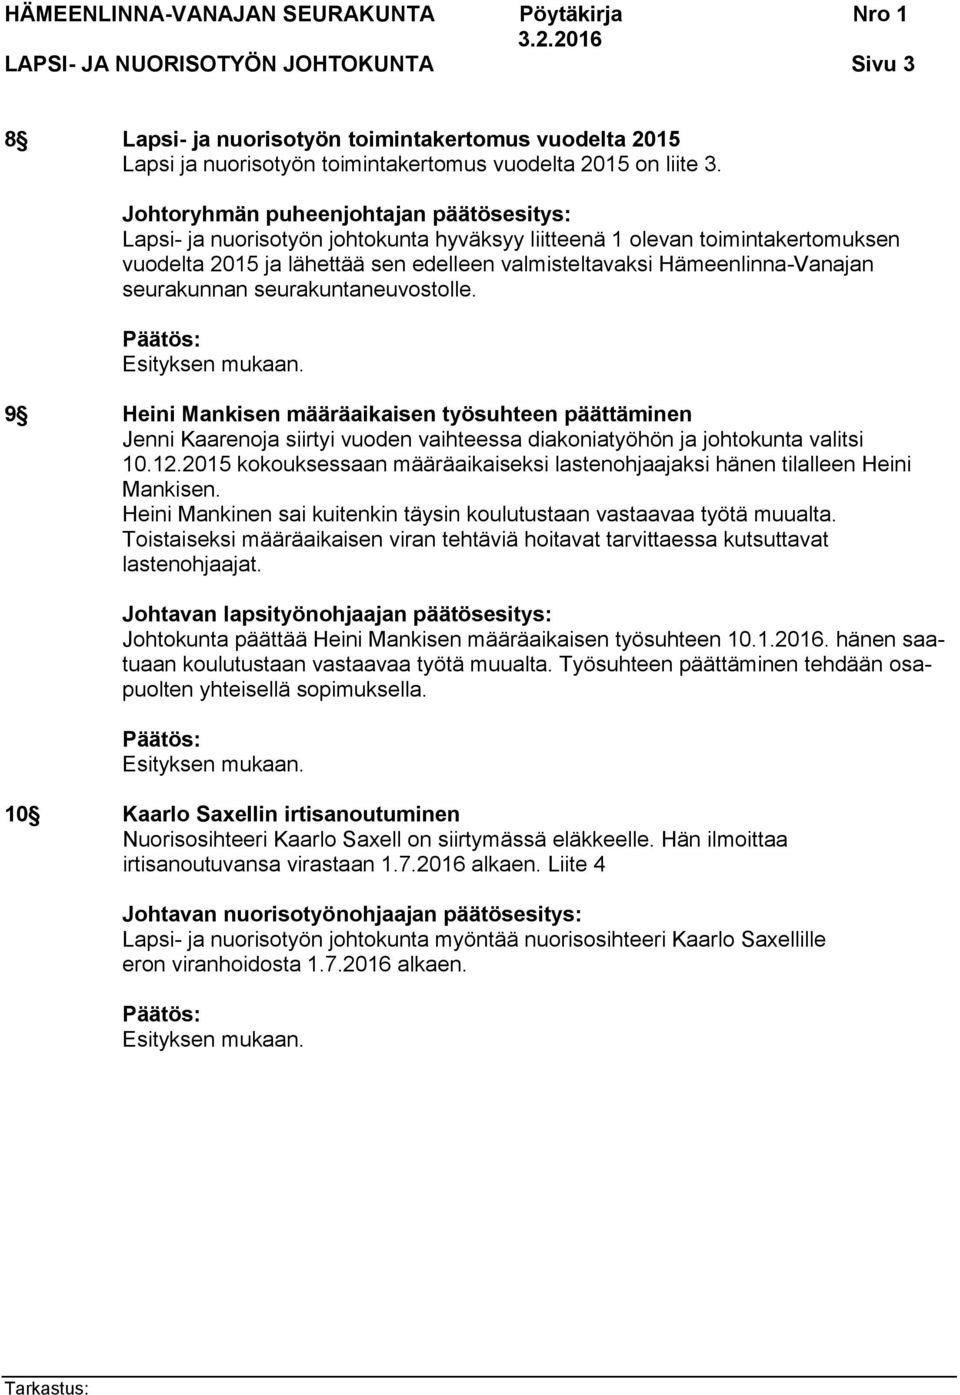 9 Heini Mankisen määräaikaisen työsuhteen päättäminen Jenni Kaarenoja siirtyi vuoden vaihteessa diakoniatyöhön ja johtokunta valitsi 10.12.